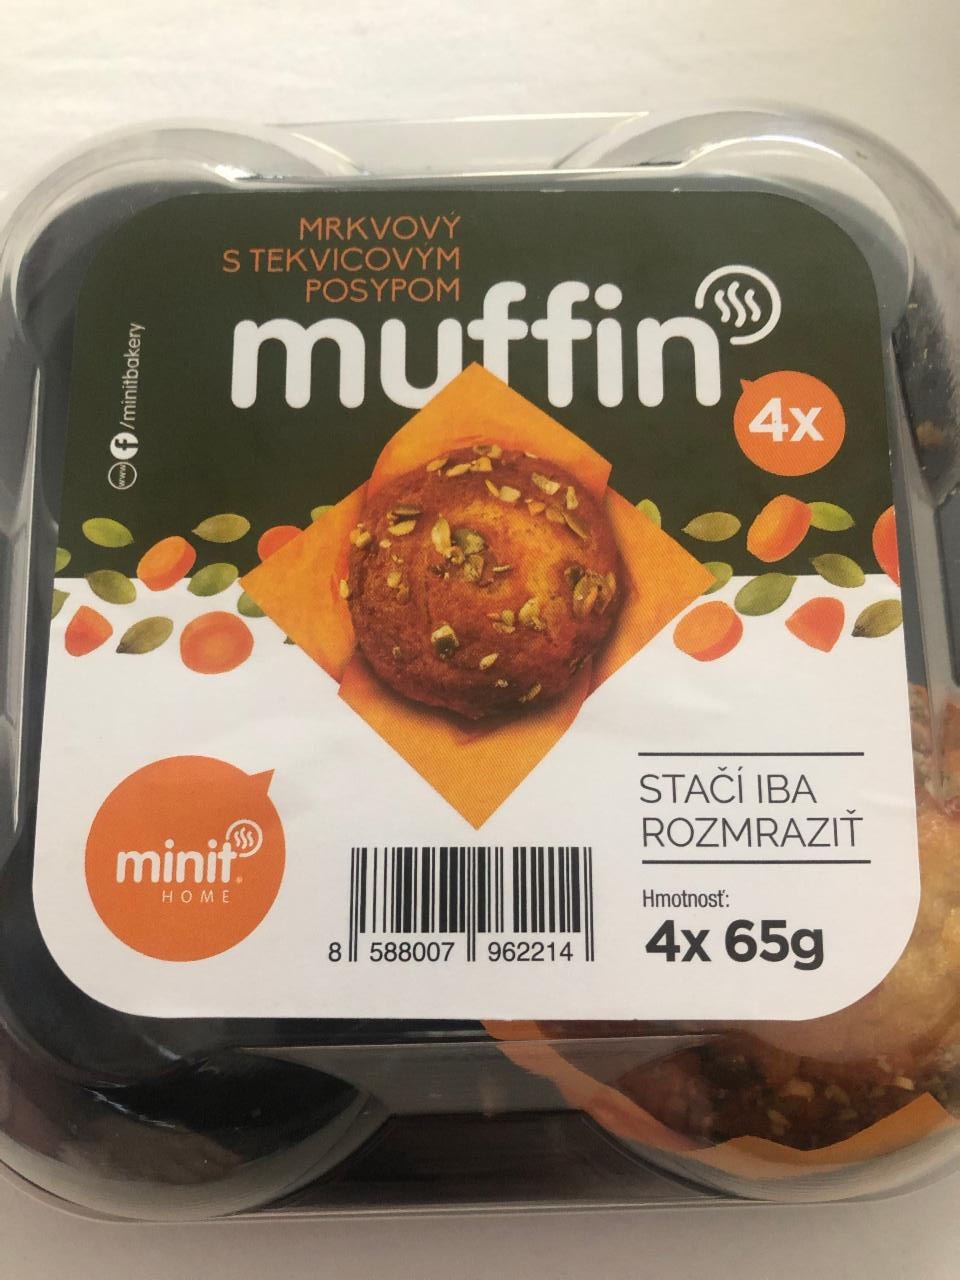 Fotografie - minit muffin mrkvový s tekvicovým posypom